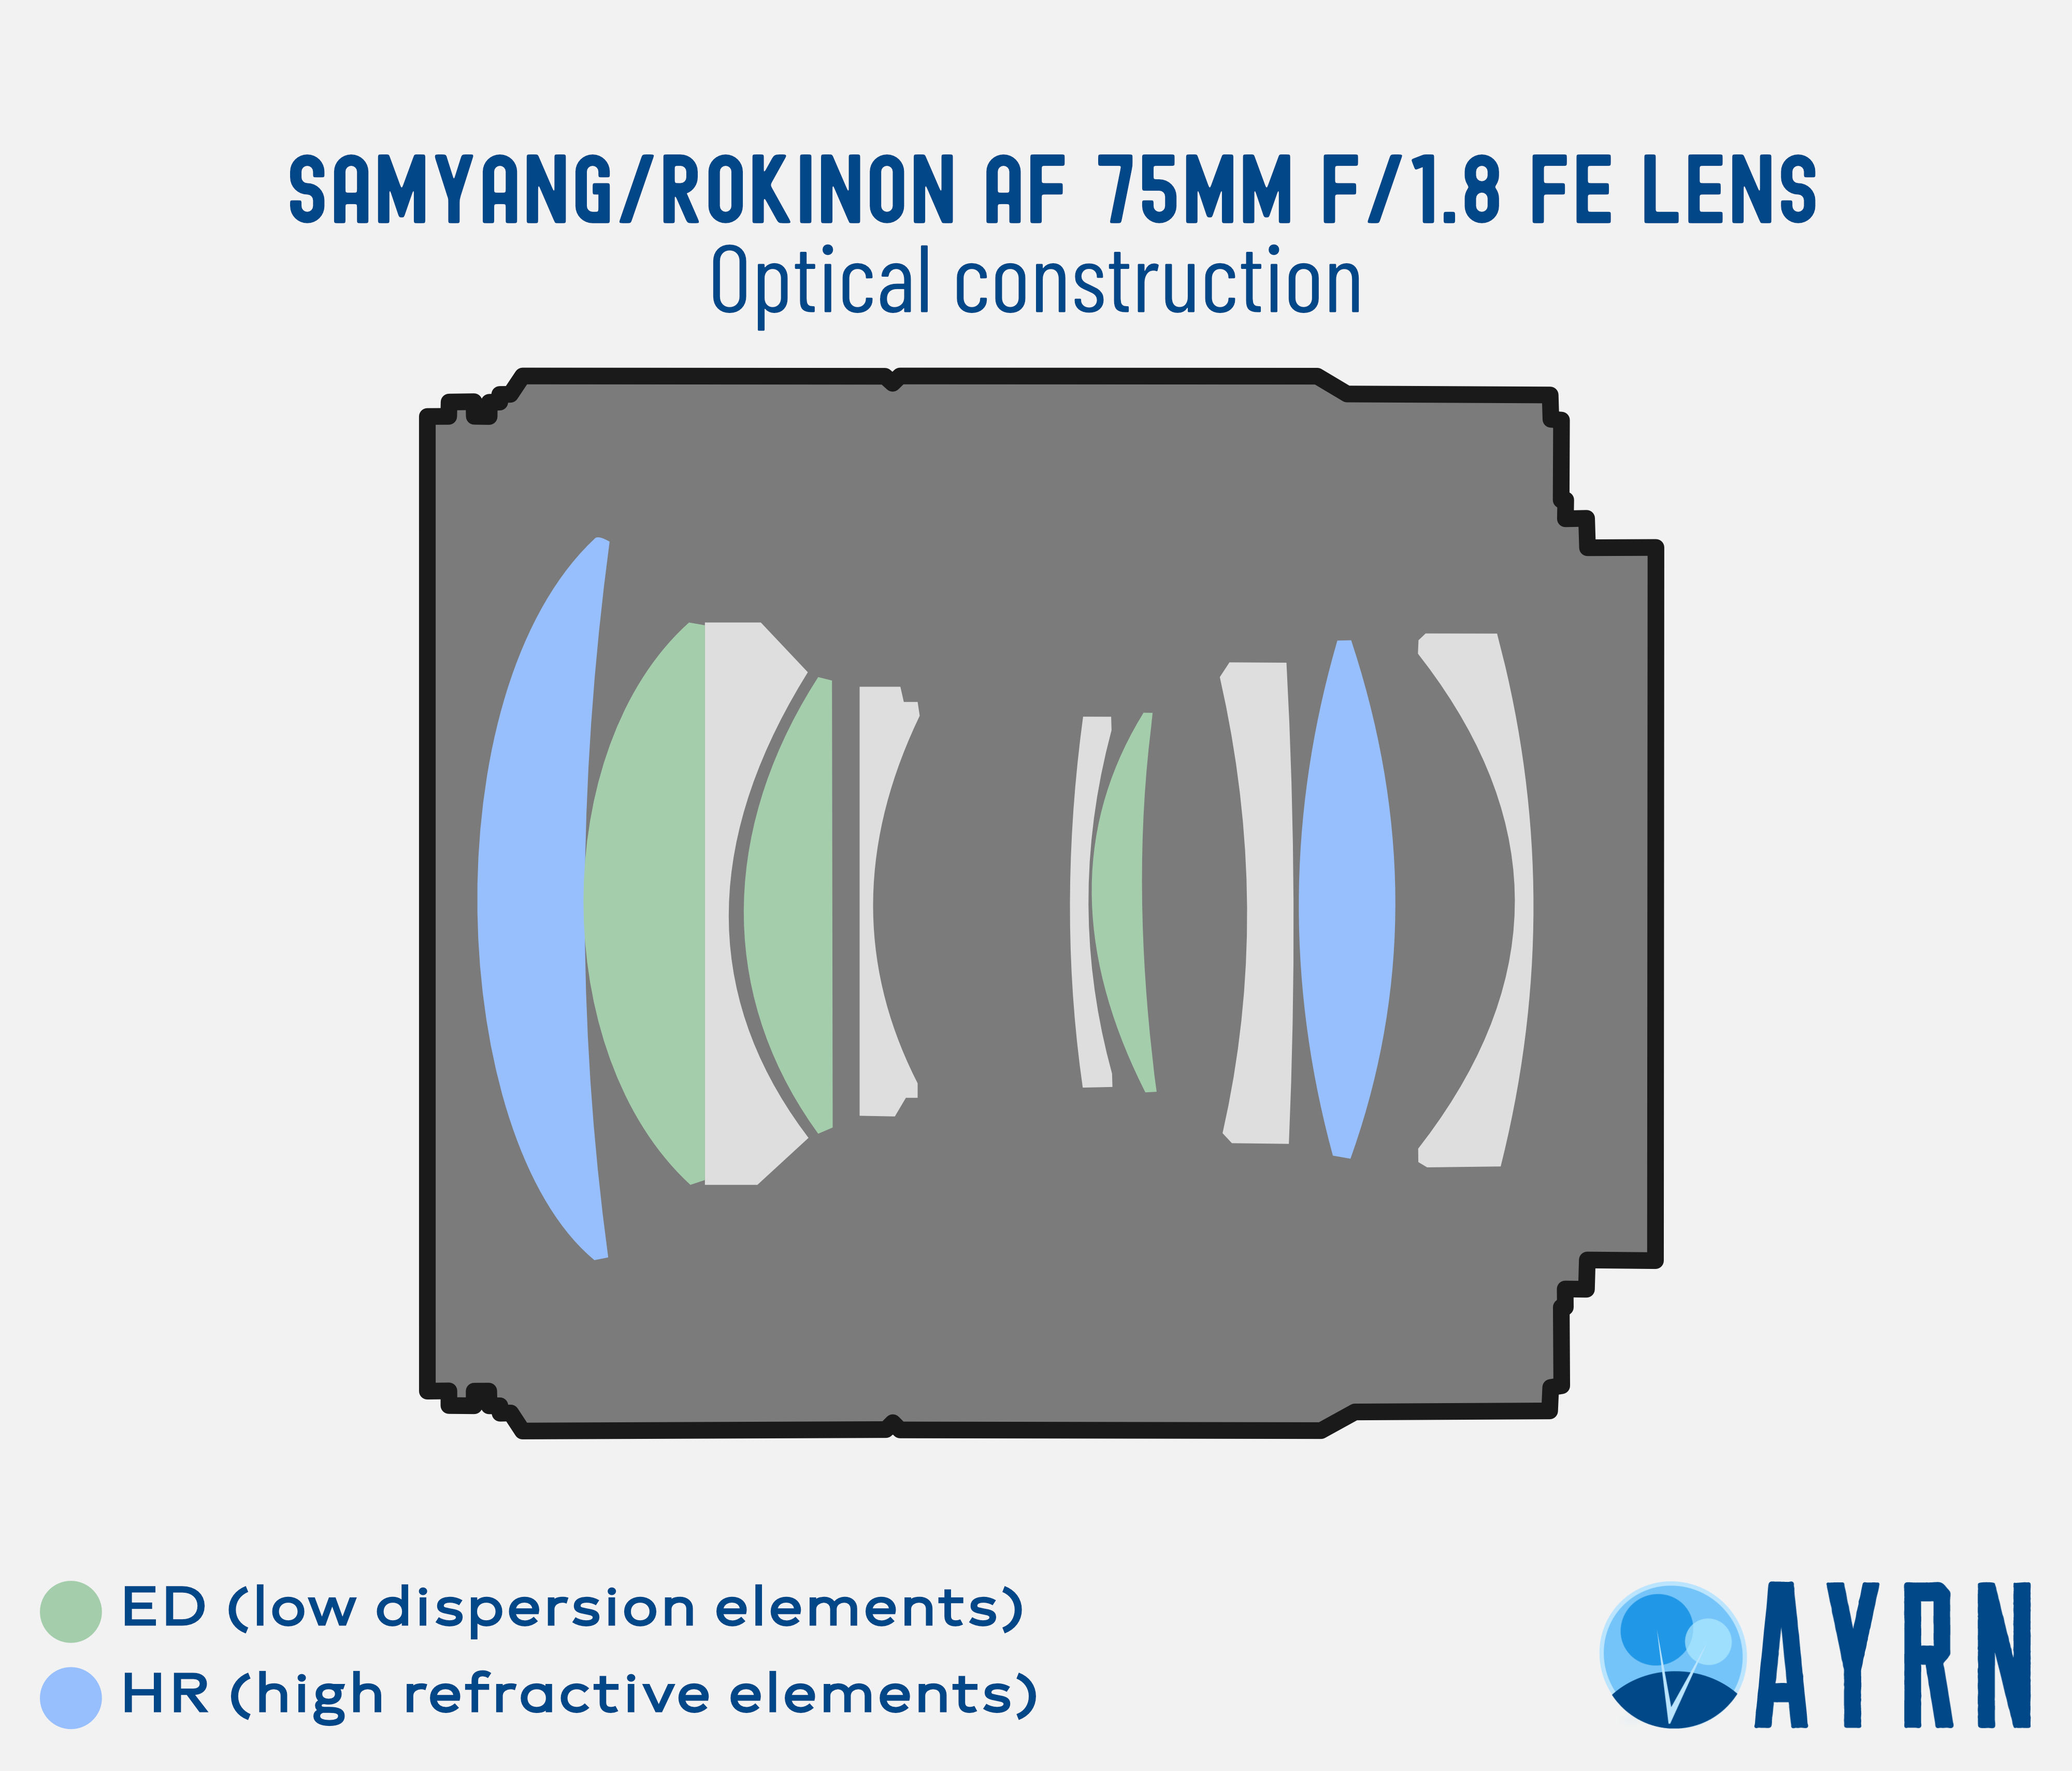 Samyang/Rokinon AF 75mm f/1.8 FE optical construction and design